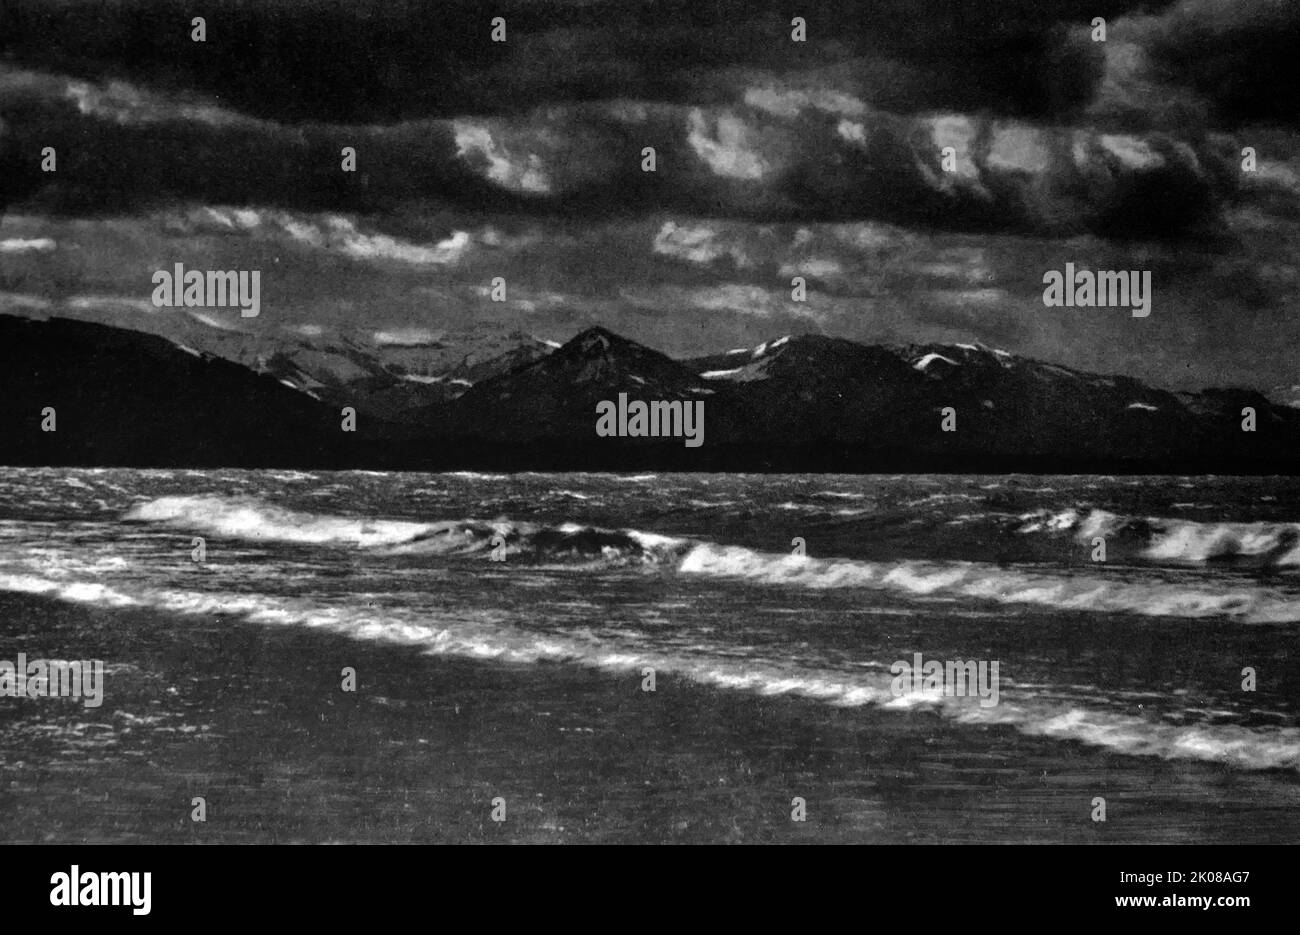 Fohn. Sturm auf dem Bodensee, der sich auf drei Gewässer am Rhein am nördlichen Fuße der Alpen bezieht, die einen Teil des Rheins verbinden. Schwarzweiß-Fotografie, c1940s Stockfoto